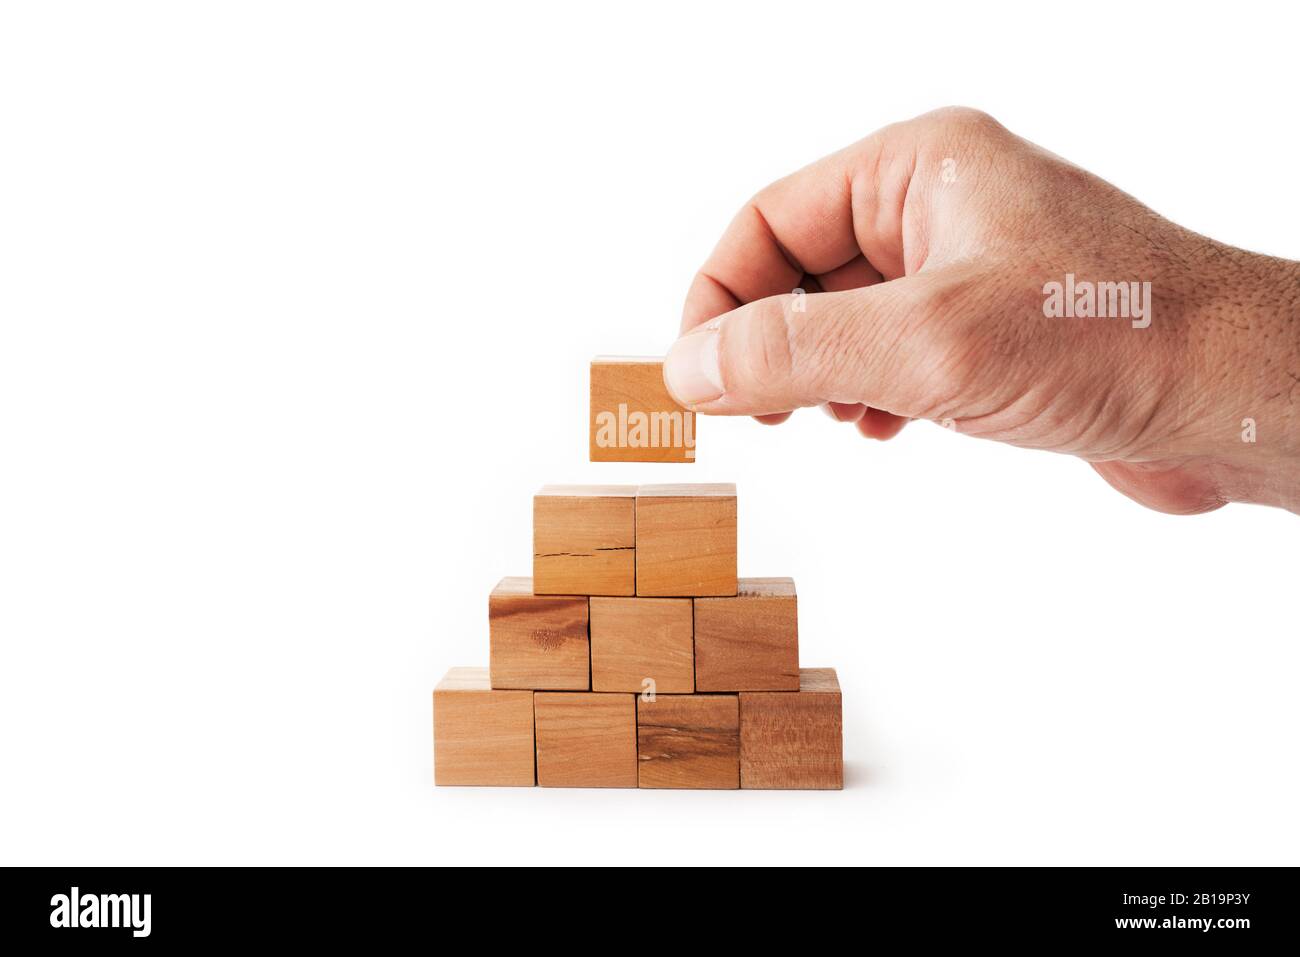 Une main met le dernier cube pour construire une pyramide avec des cubes en bois sur fond blanc. Succès, stratégie, amélioration et concept de victoire Banque D'Images